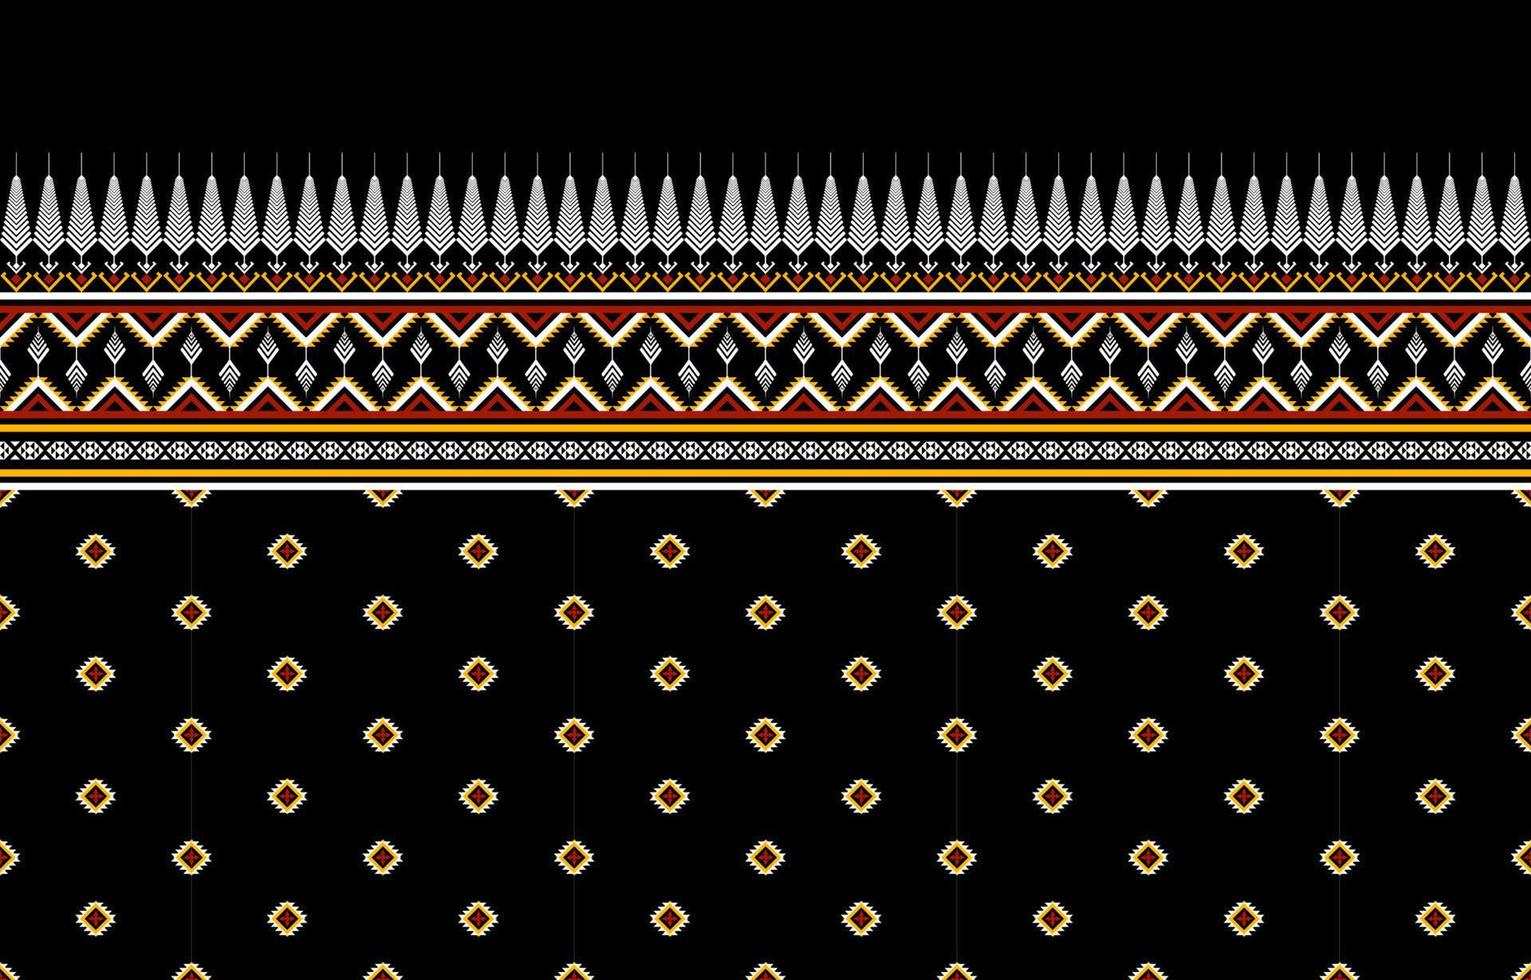 diseño tradicional de patrón étnico geométrico para fondo, alfombra, papel pintado, ropa, envoltura, batik, tela, sarong, ilustración, bordado, estilo. vector